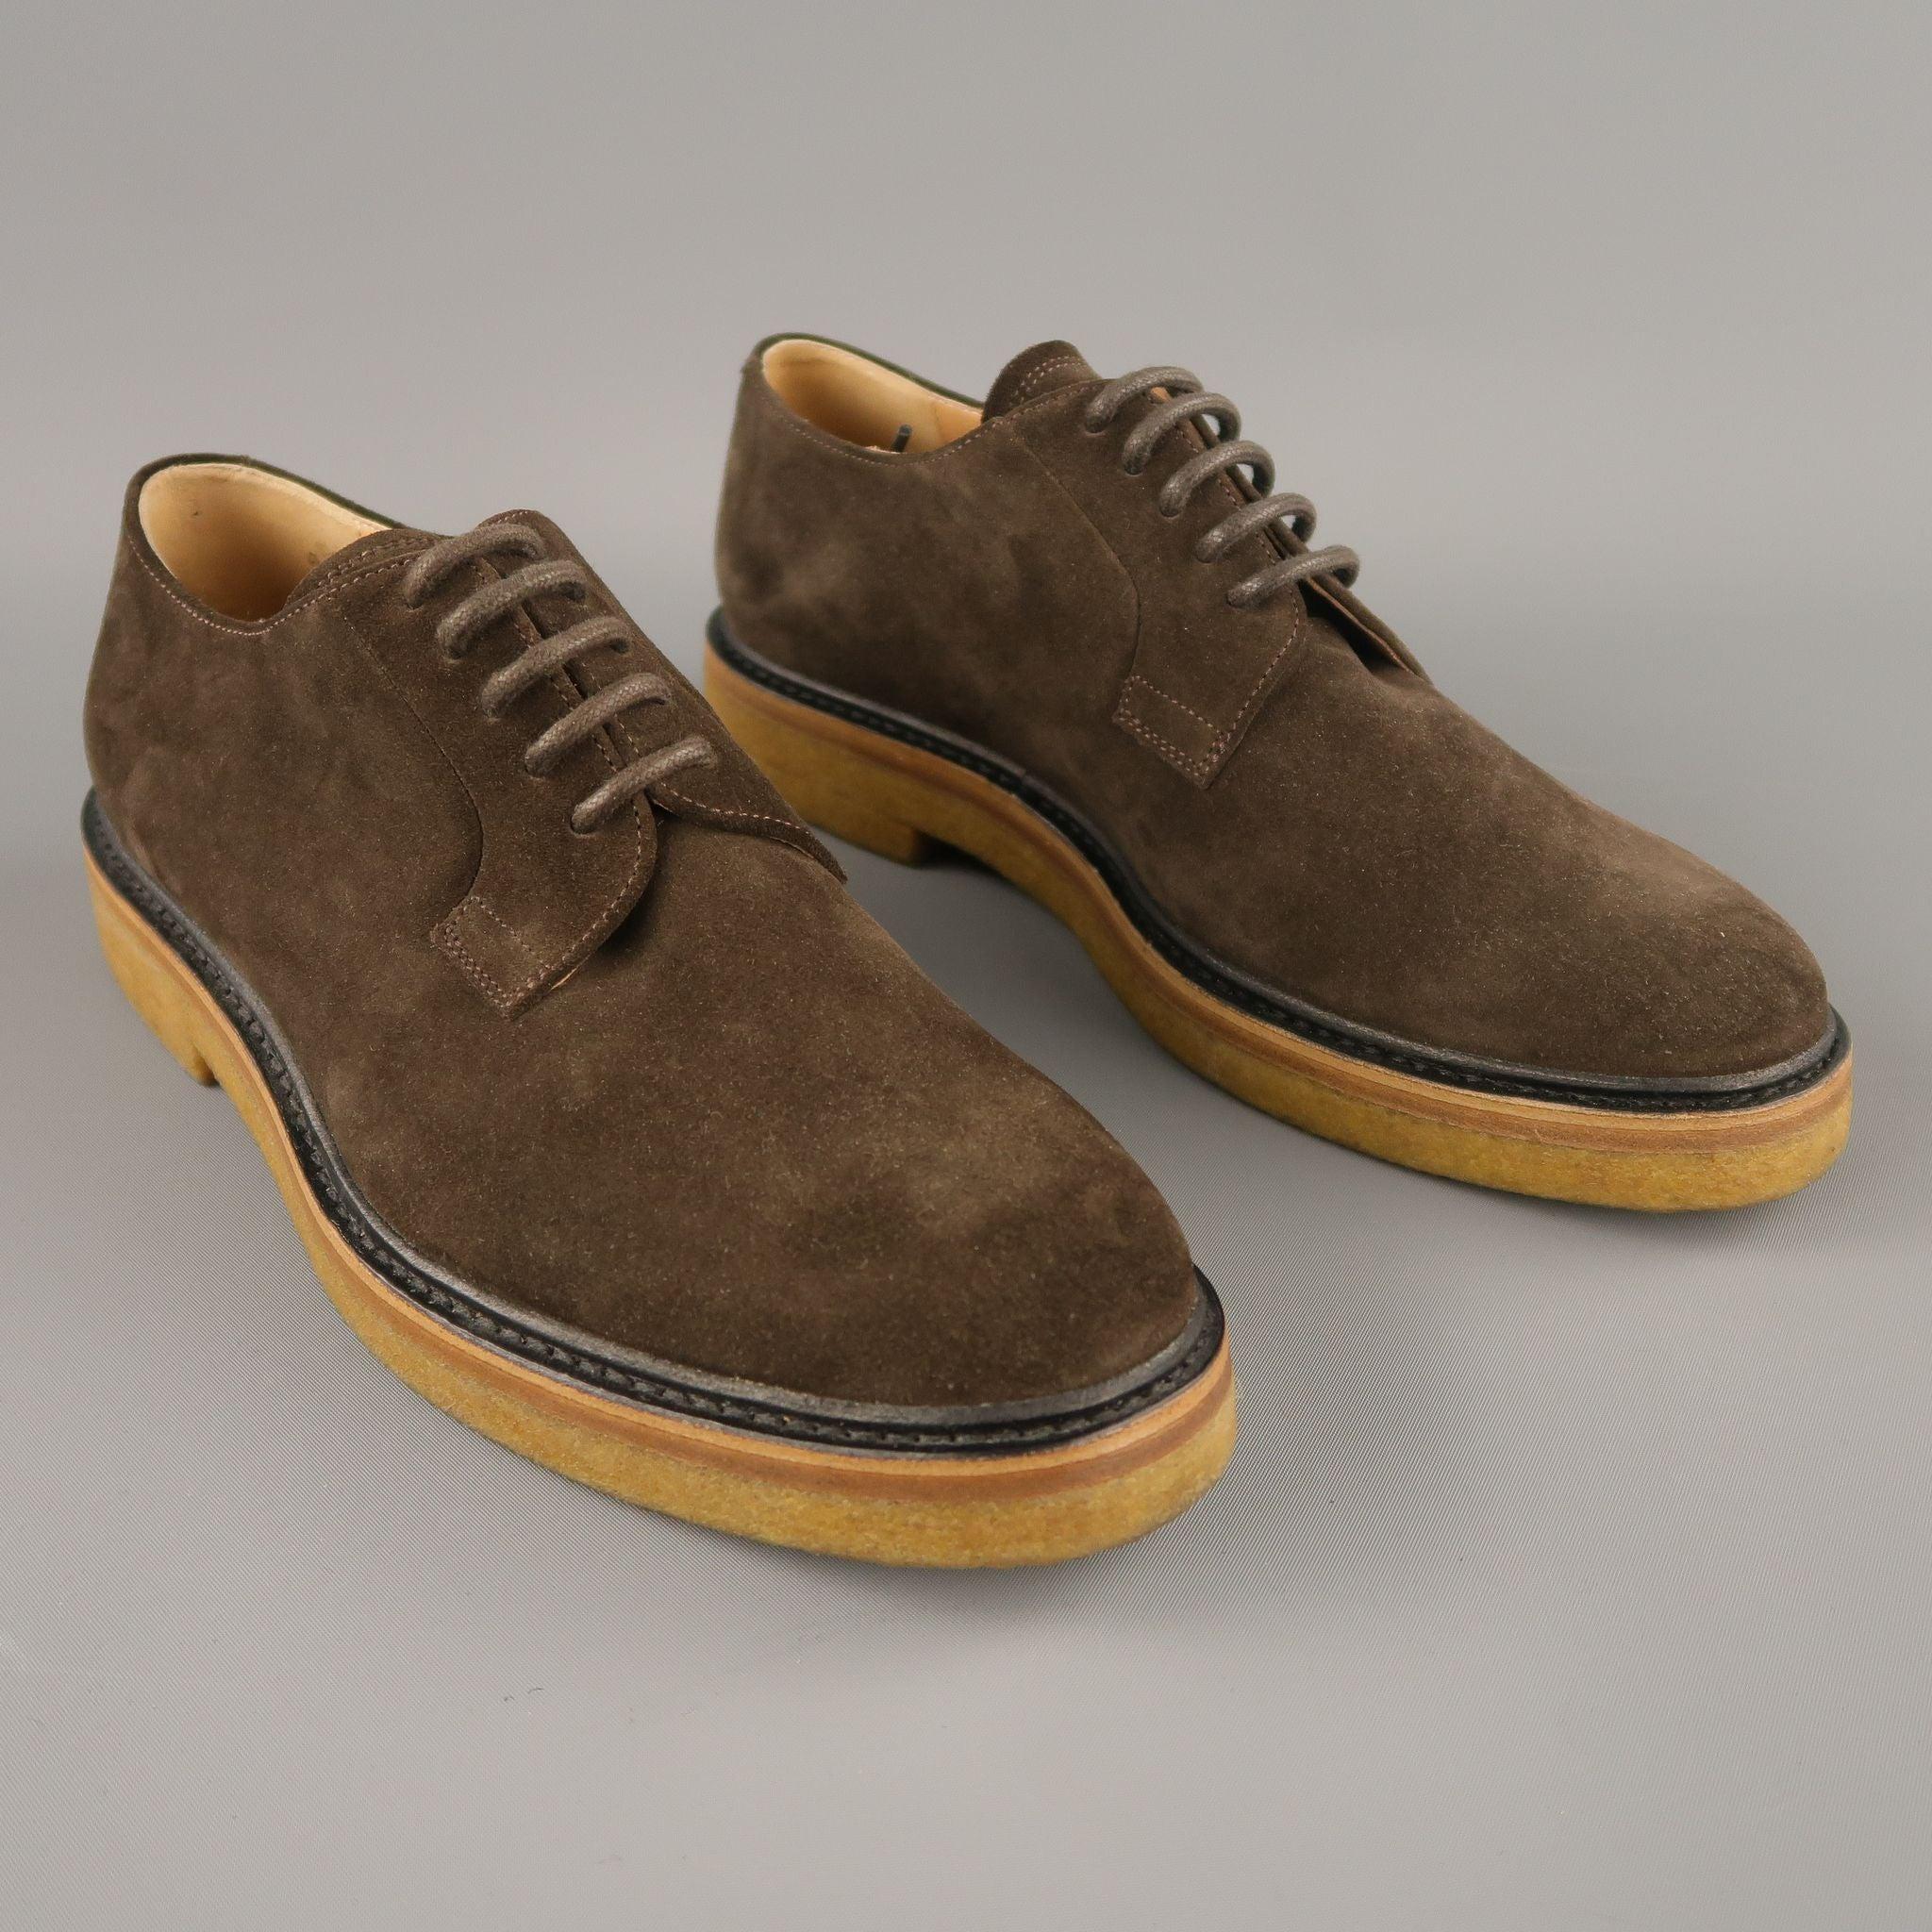 Der Schuh von DRIES VAN NOTEN ist aus braunem Wildleder und hat eine Kreppsohle. Made in Italy Ausgezeichneter Pre-Owned Zustand.
 Mit Schachtel. 

Markiert:   40 

Abmessungen: 
  Breite: 4,4 Zoll Länge: 11,5 Zoll 
  
  
 
Referenz: